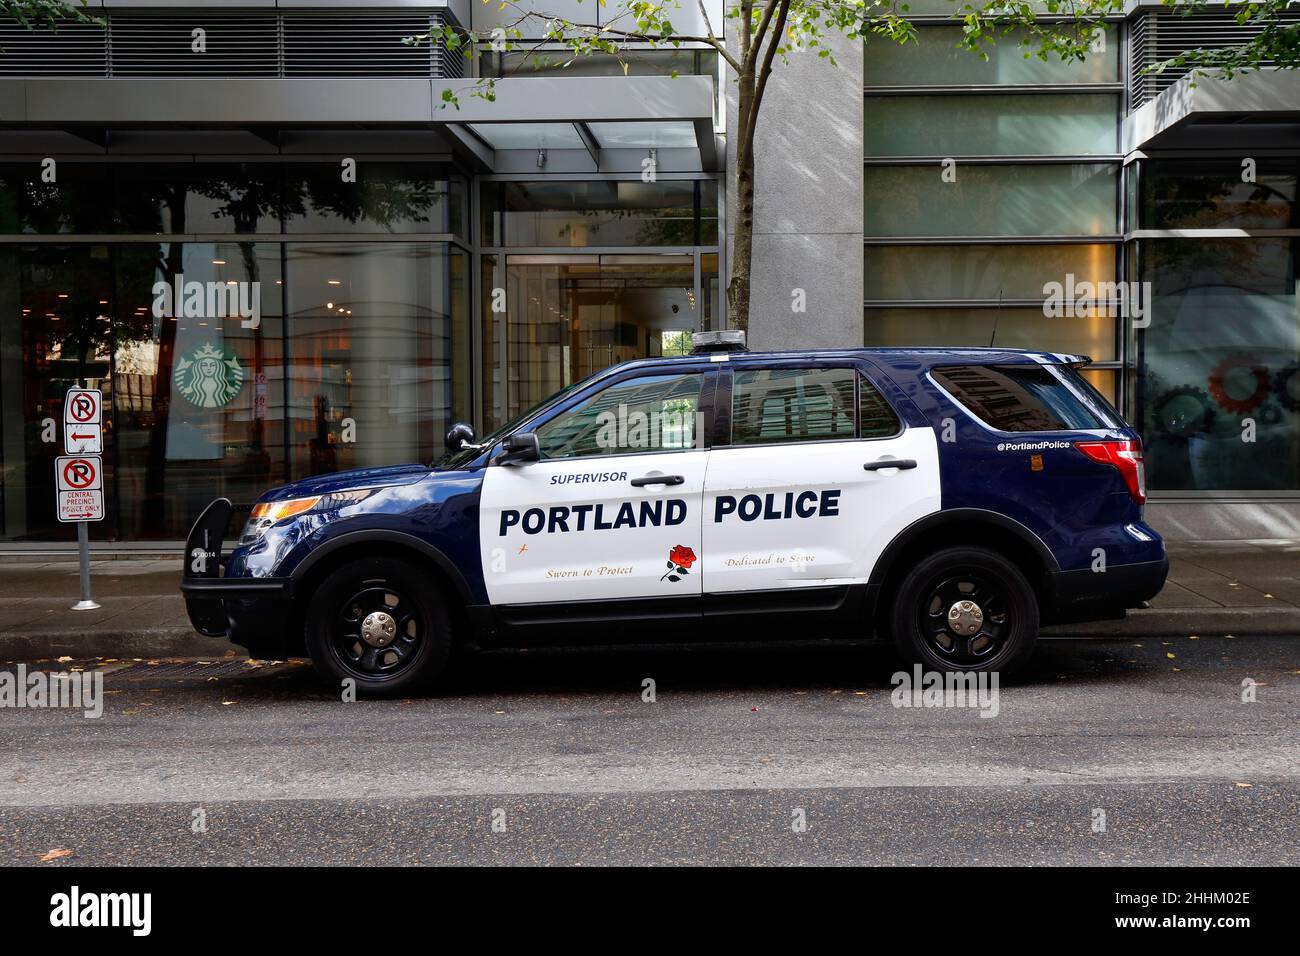 Un coche de la policía de Portland aparcado en una calle en el distrito central de negocios del centro de Portland, Oregon. Foto de stock